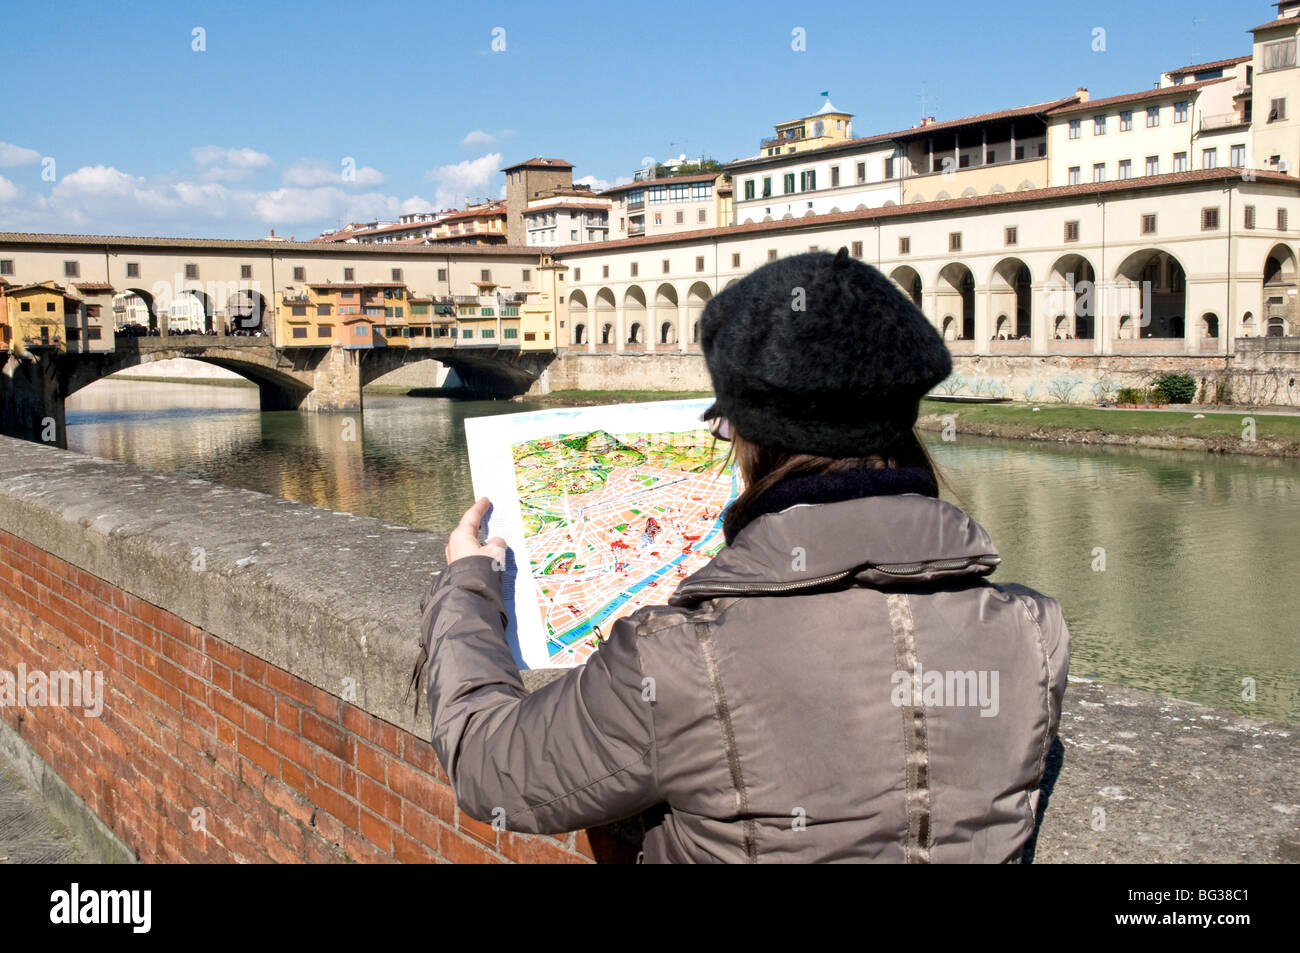 Le Ponte Vecchio, Florence (Firenze), UNESCO World Heritage Site, Toscane, Italie, Europe Banque D'Images